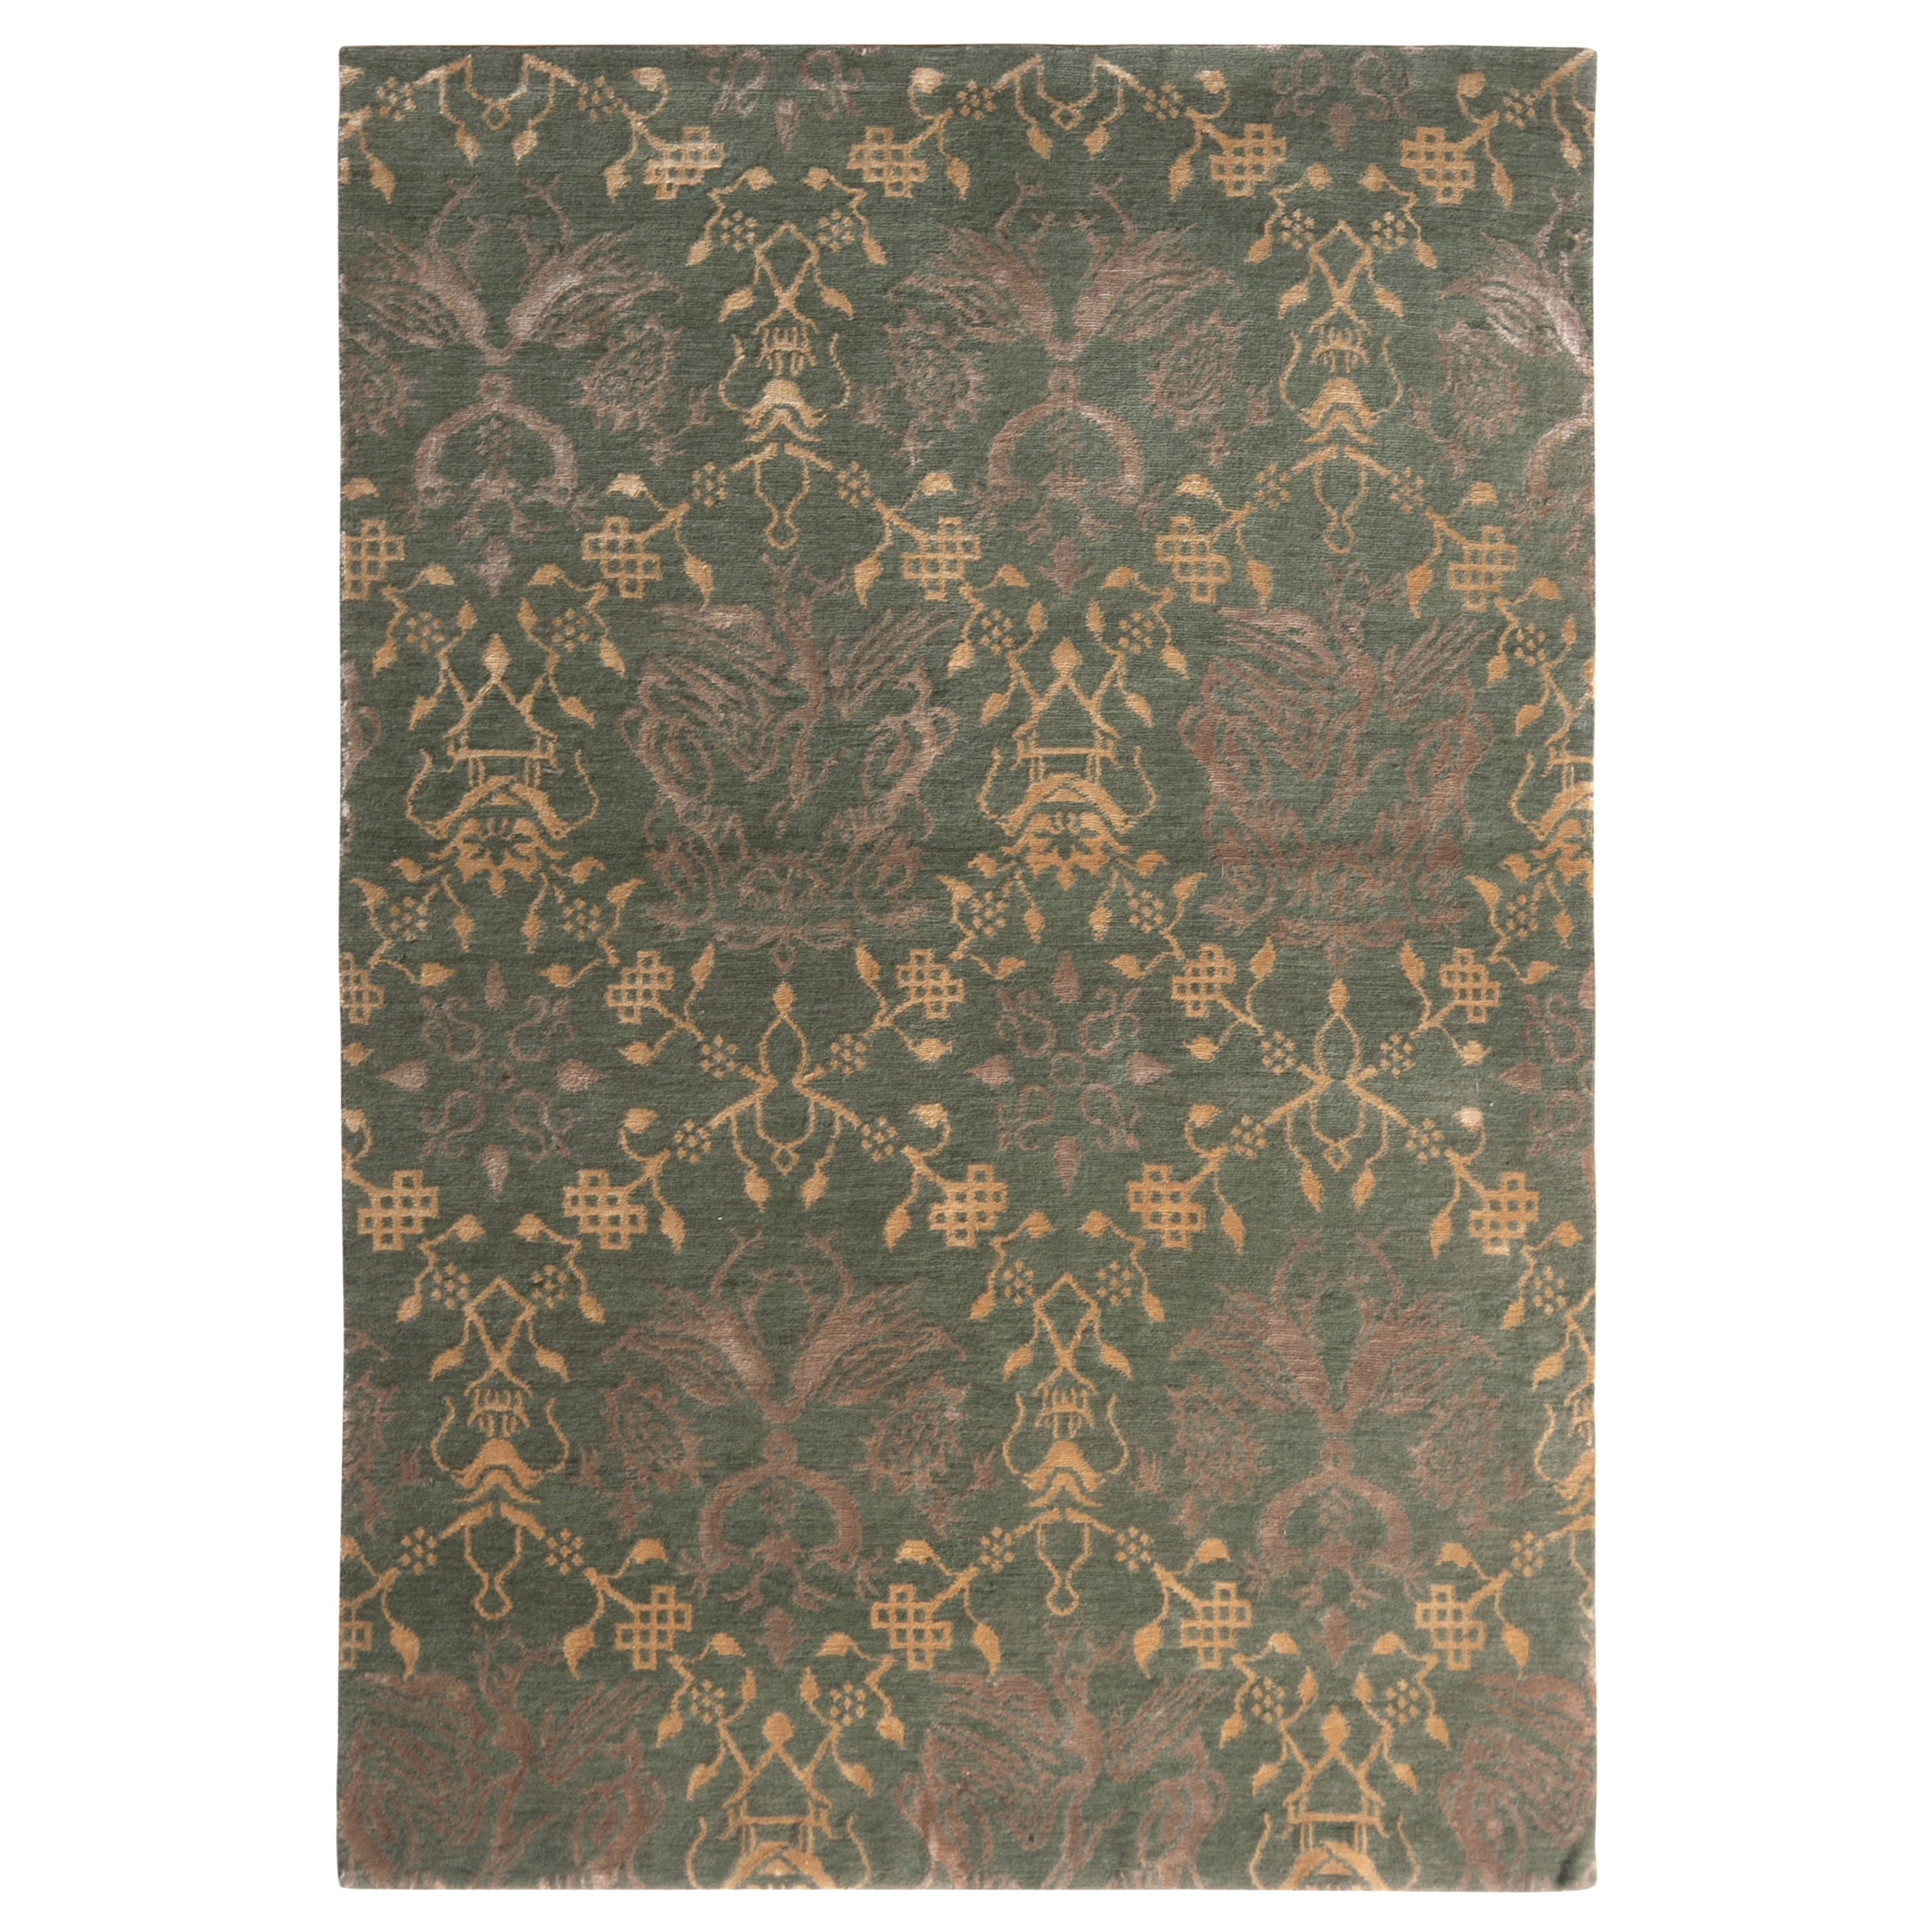 Traditioneller Teppich und Kelim-Teppich im europäischen Stil in Grün und Gold mit Bildmuster